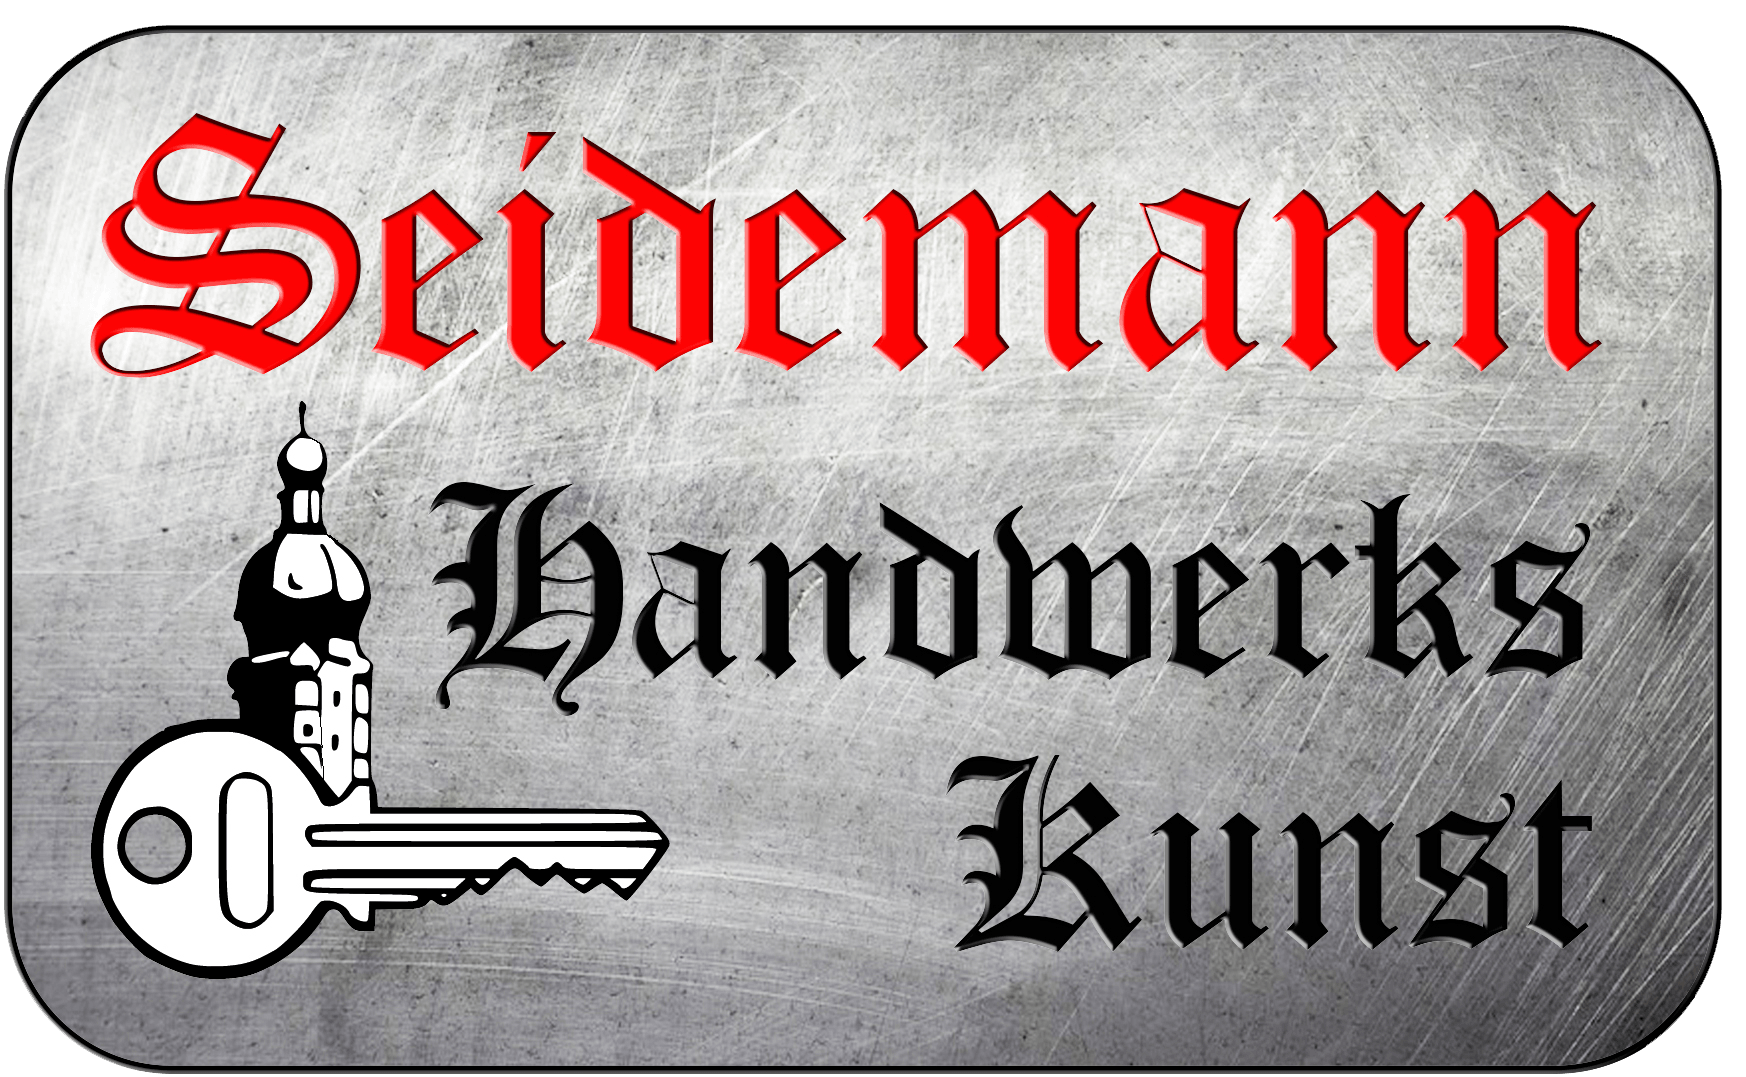 Seidemann Handwerks Kunst